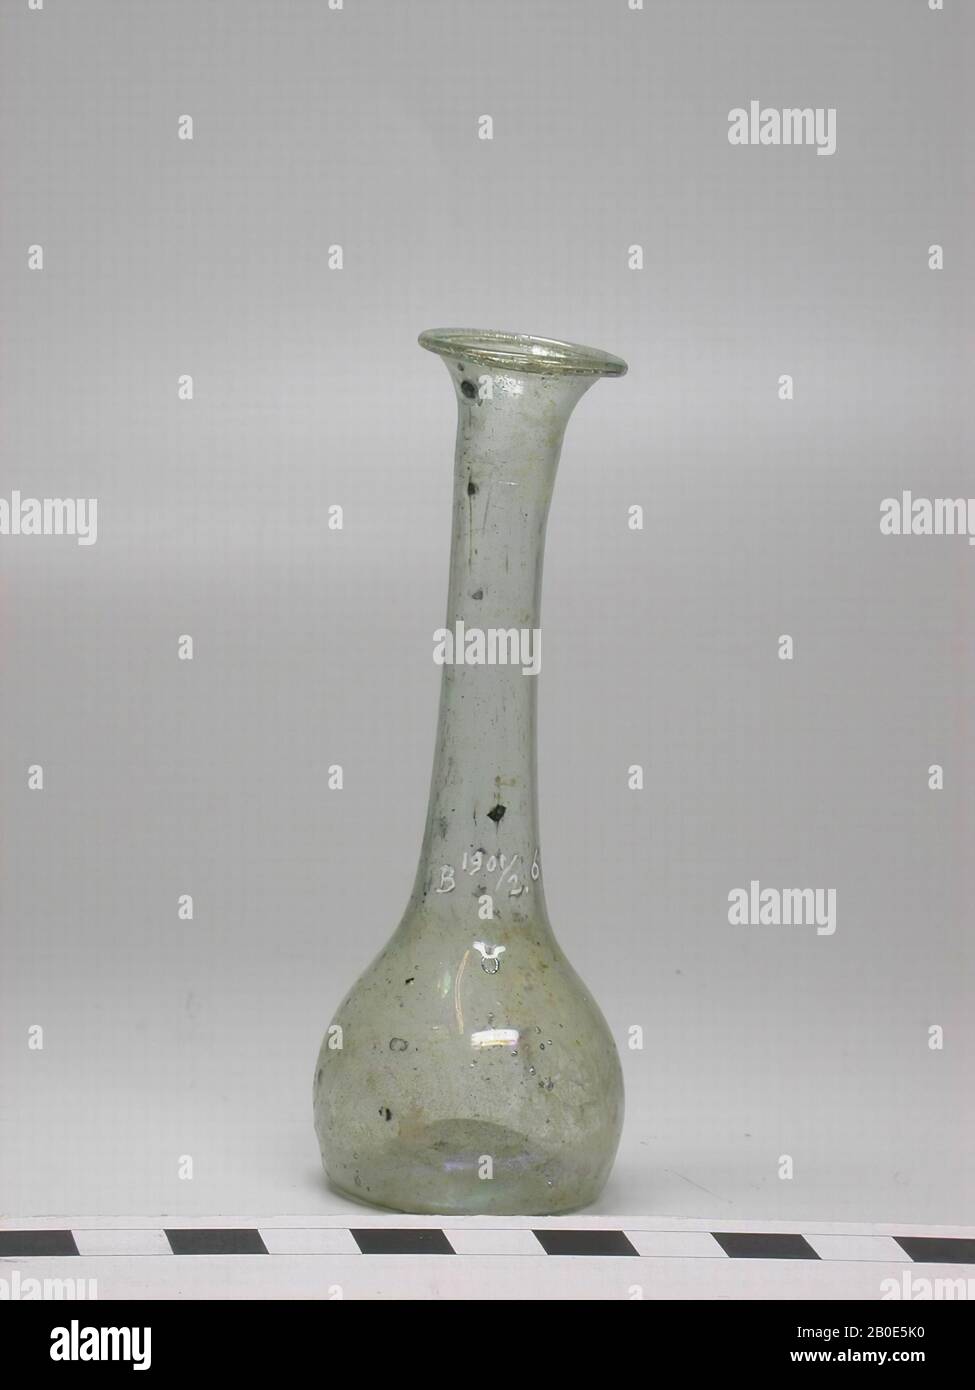 Botella esférica de vidrio azul-verde con cuello largo, que termina en forma de embudo, vajilla, cristal, H 9.5 cm, Líbano Foto de stock